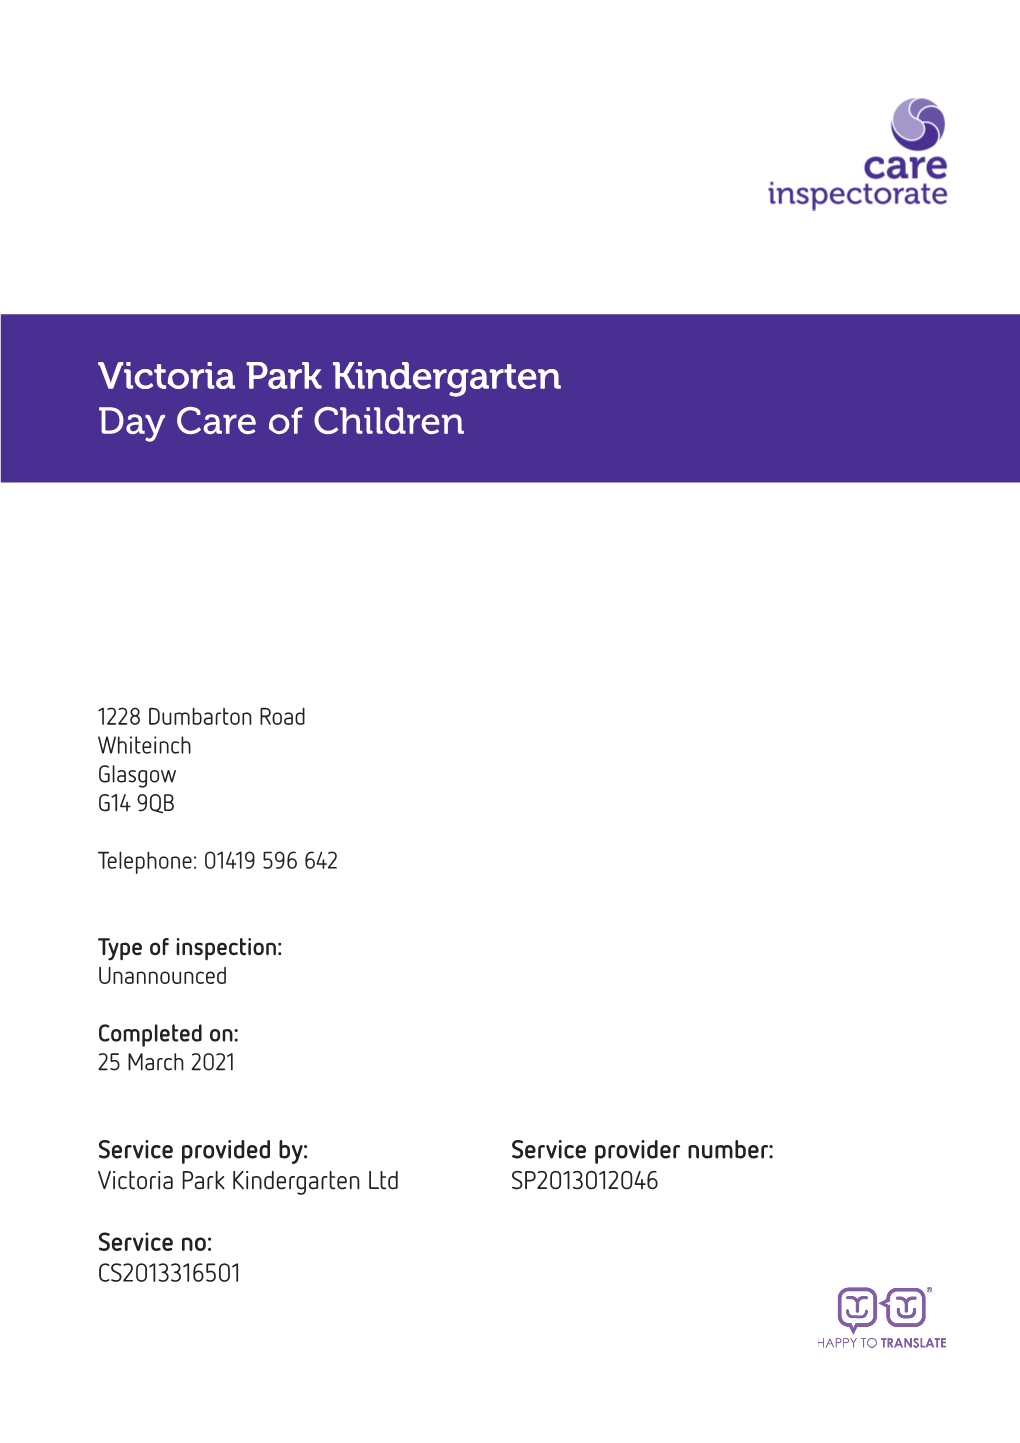 Victoria Park Kindergarten Day Care of Children